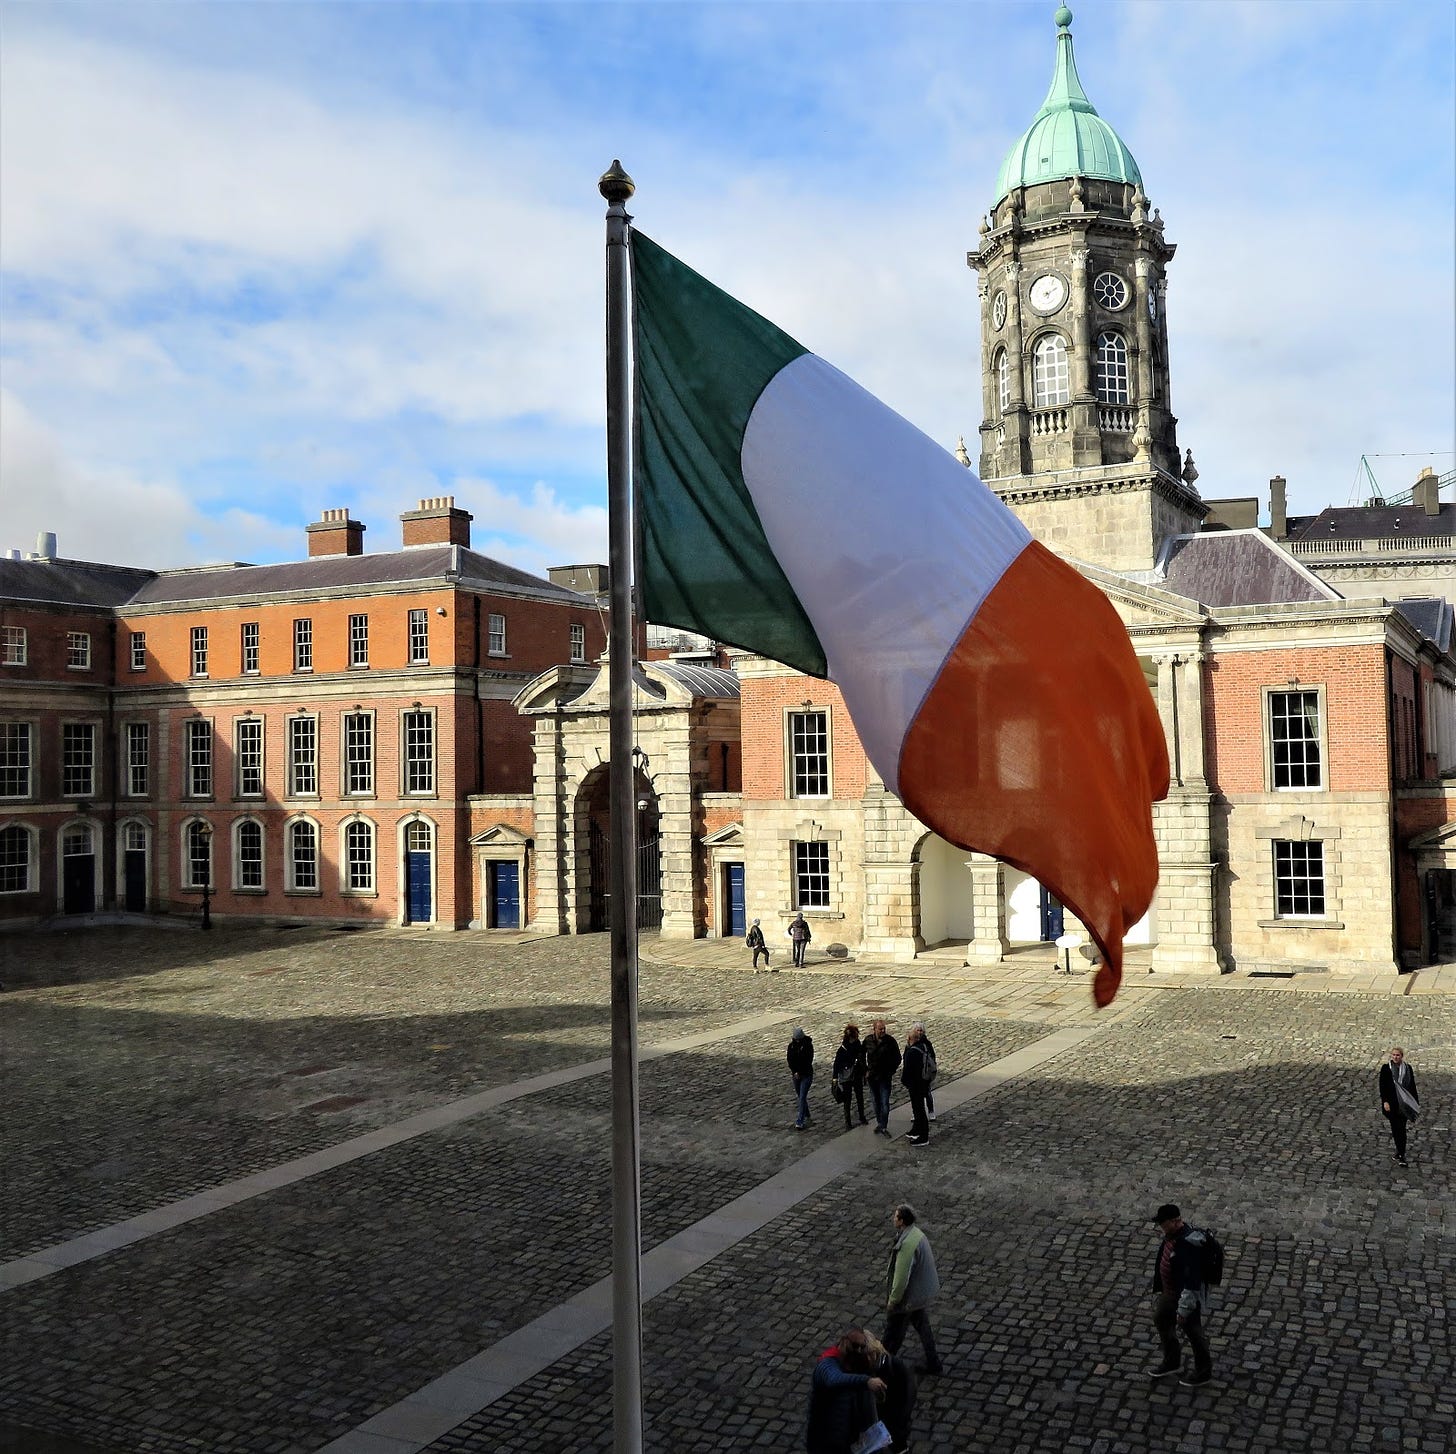 Somewhere Else: Dublin: "Éirinn go Brách" ("Ireland Forever")